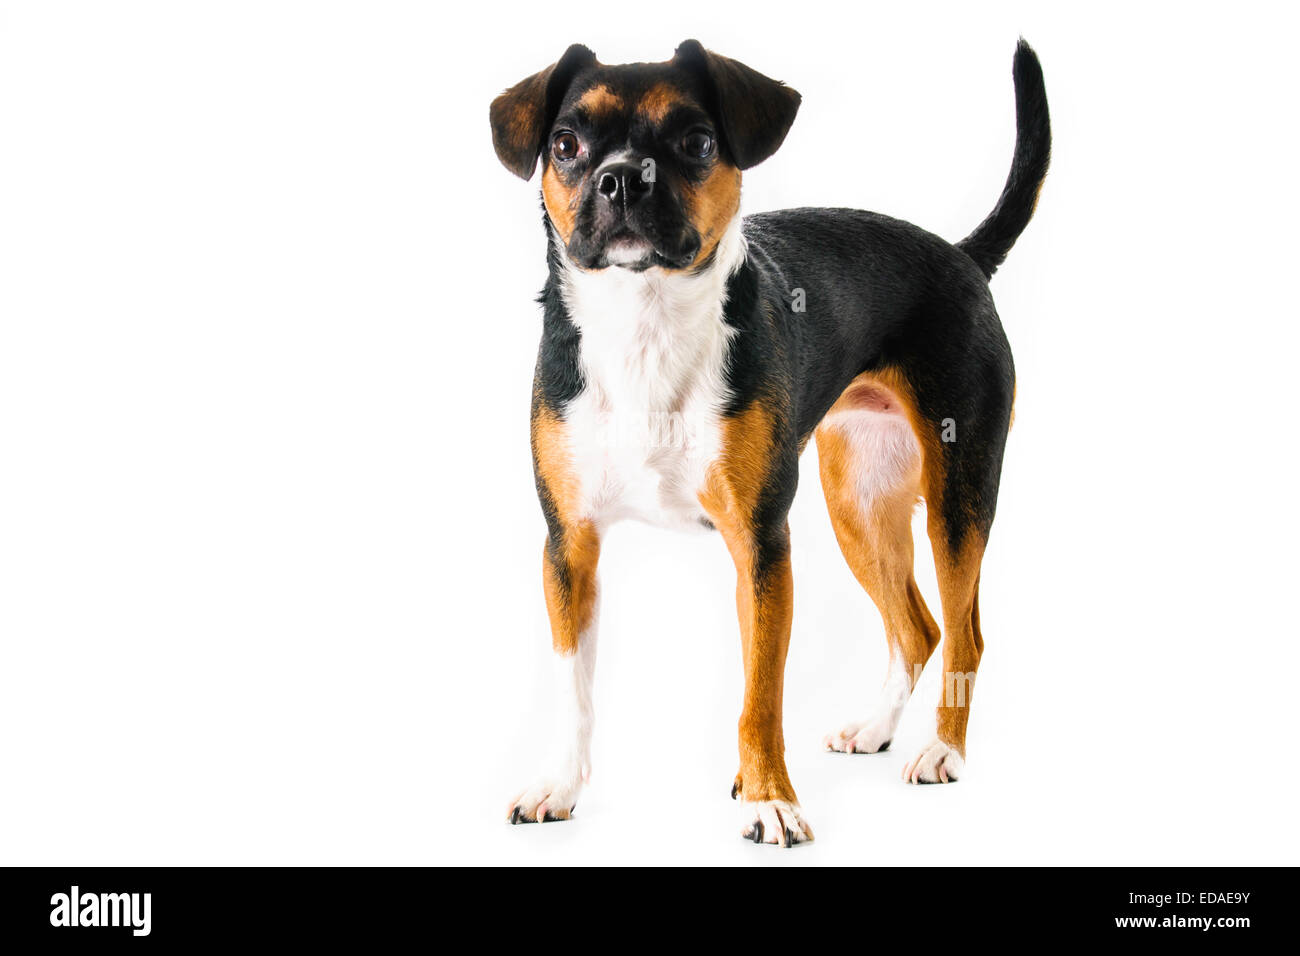 Marrone e bianco beagle e Boston Terrier di razza cane su sfondo bianco Foto Stock